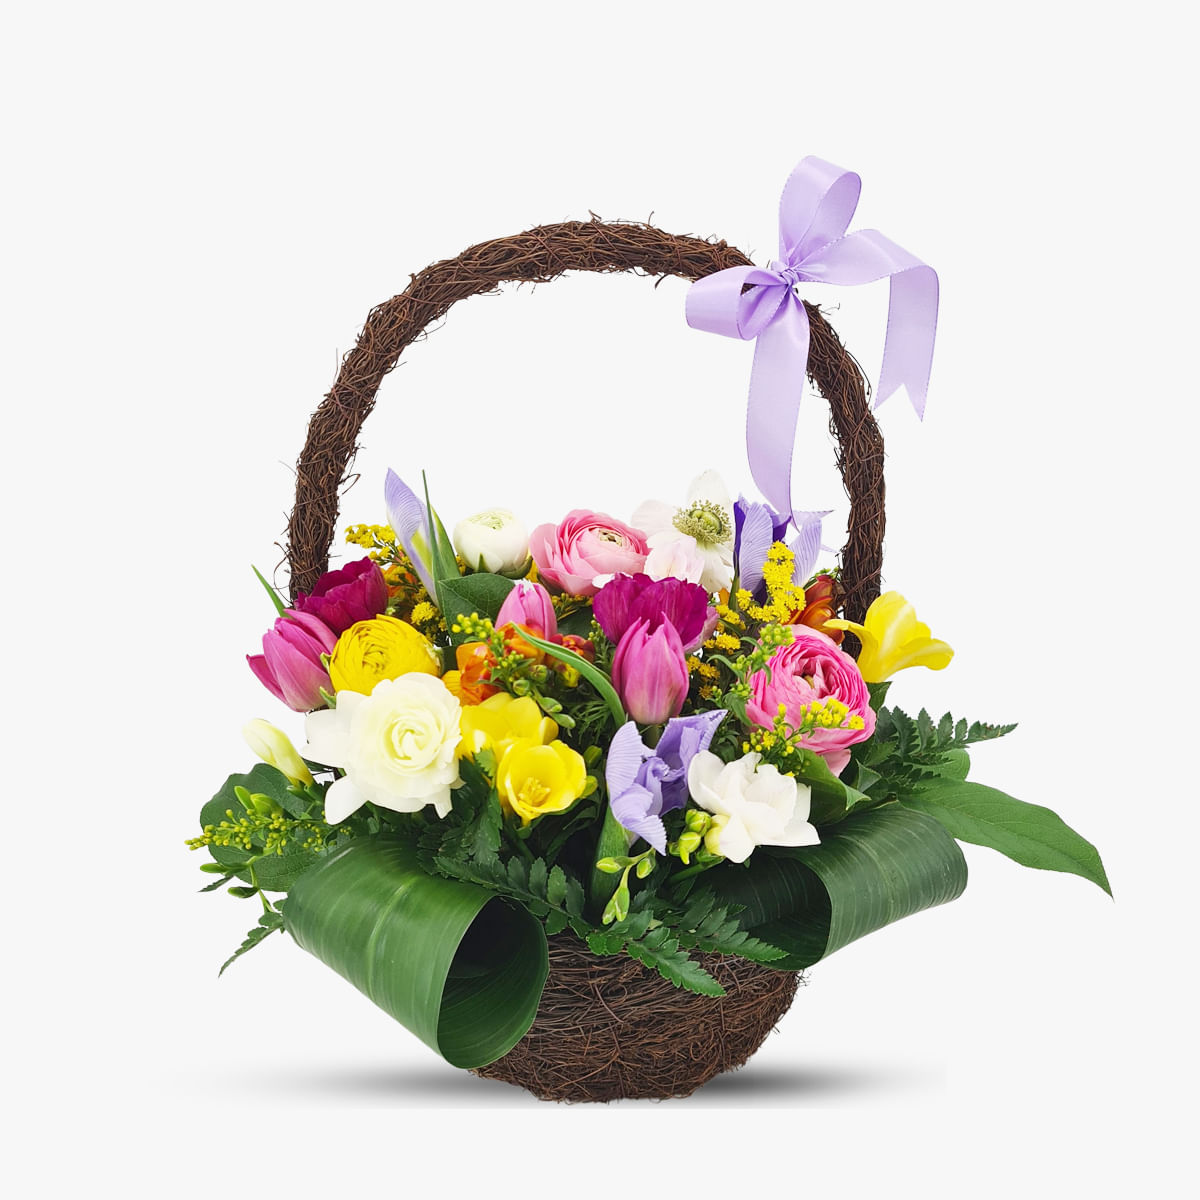 Cos cu flori – Aranjament cu irisi si trandafiri – premium Aranjament